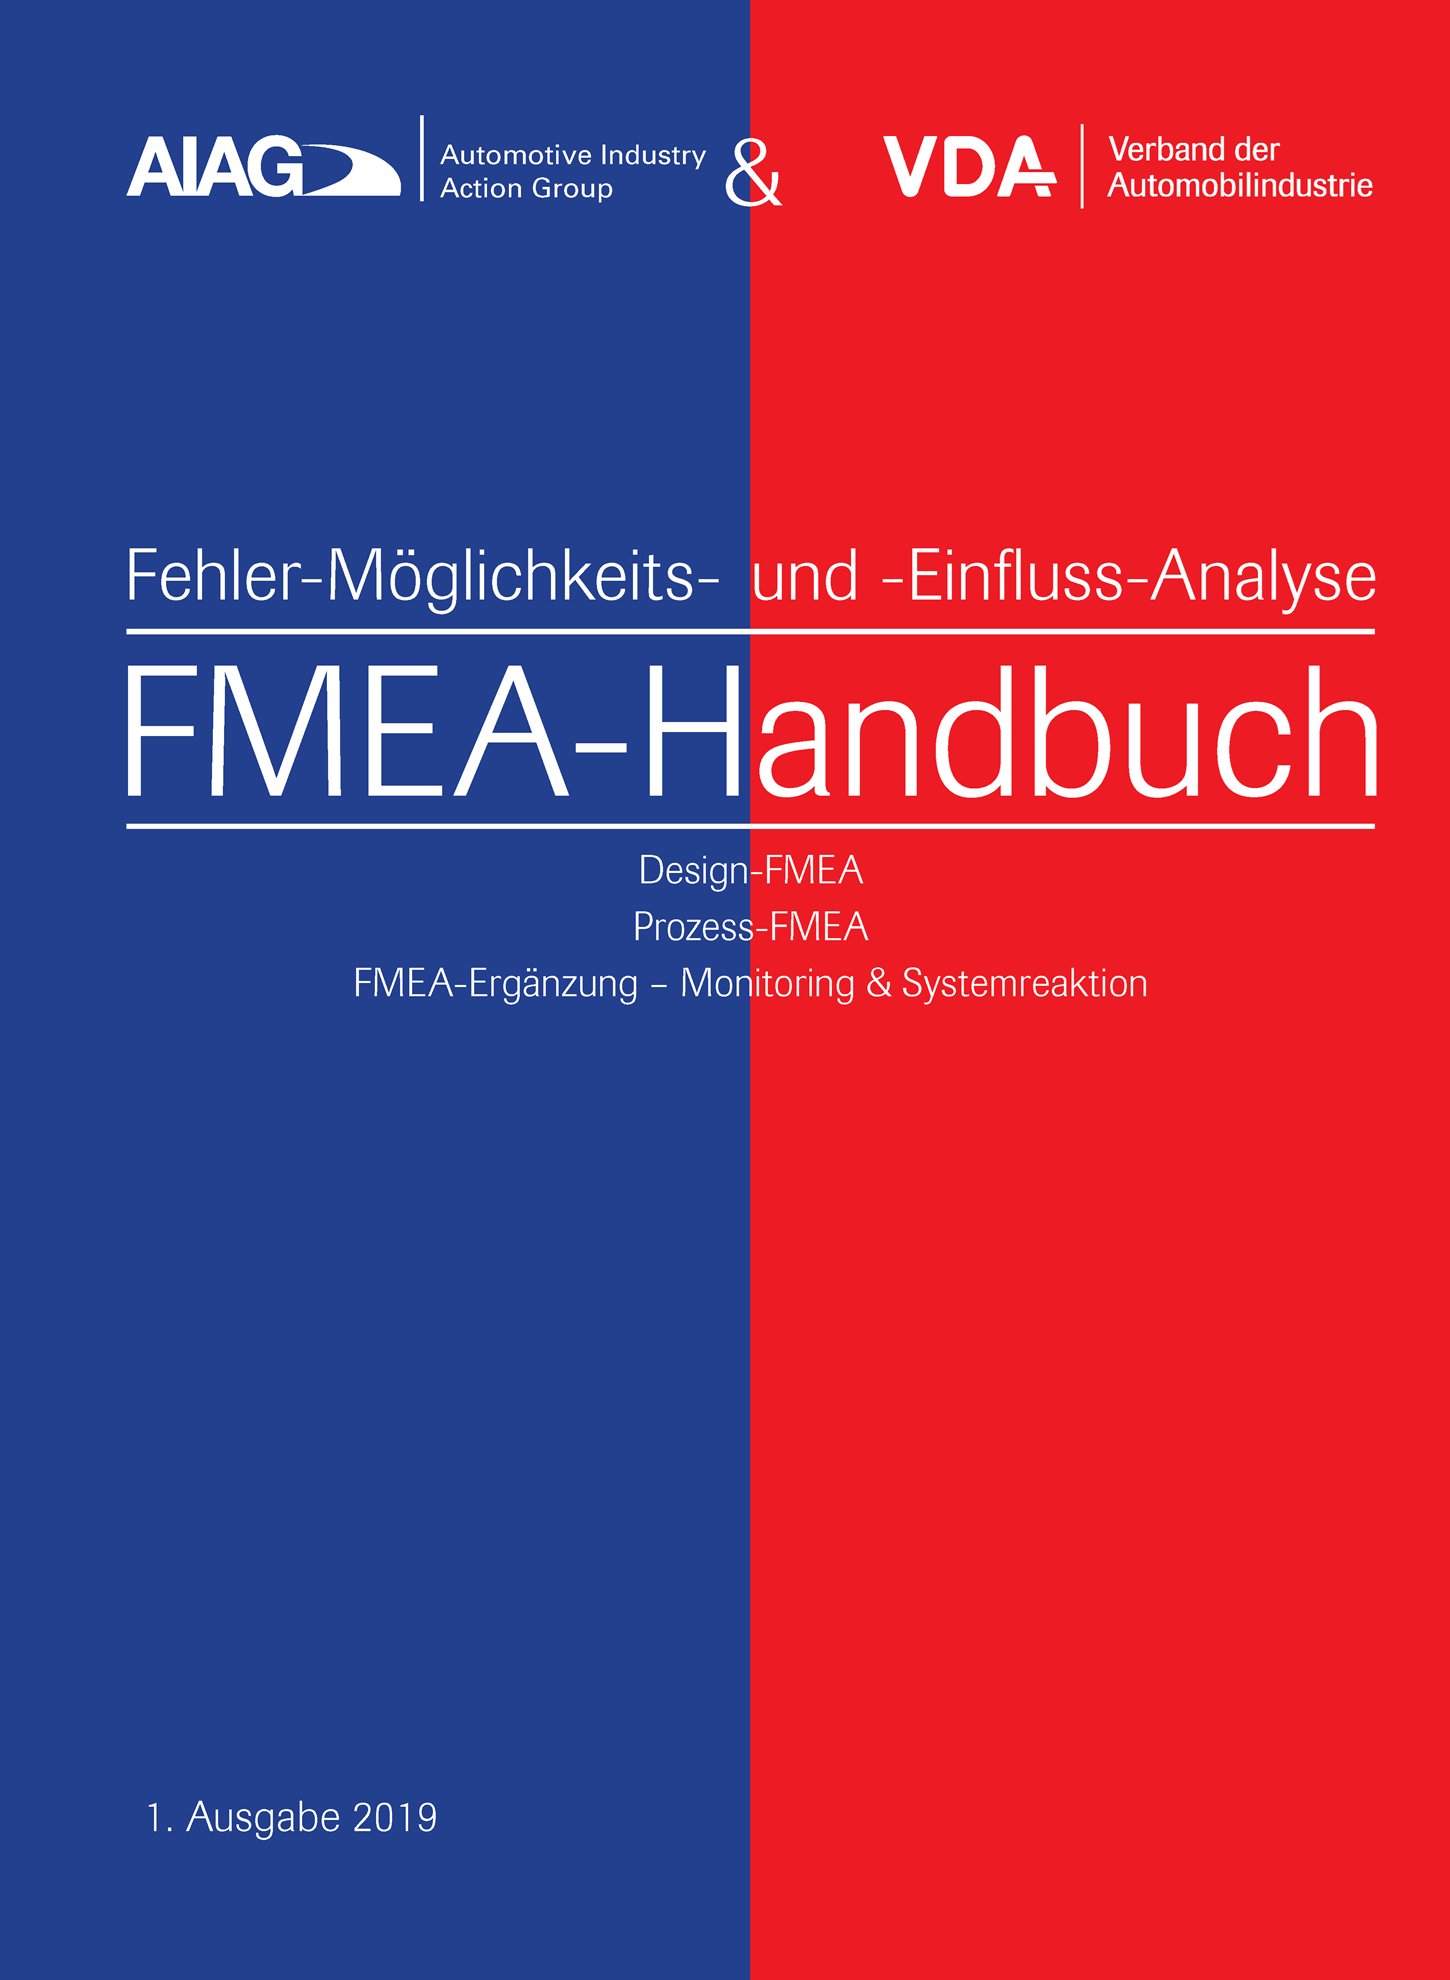 Náhľad  VDA AIAG & VDA FMEA-Handbuch
 Design-FMEA, Prozess-FMEA, 
 FMEA-Ergänzung - Monitoring & Systemreaktion
 1. Ausgabe 2019 1.1.2019